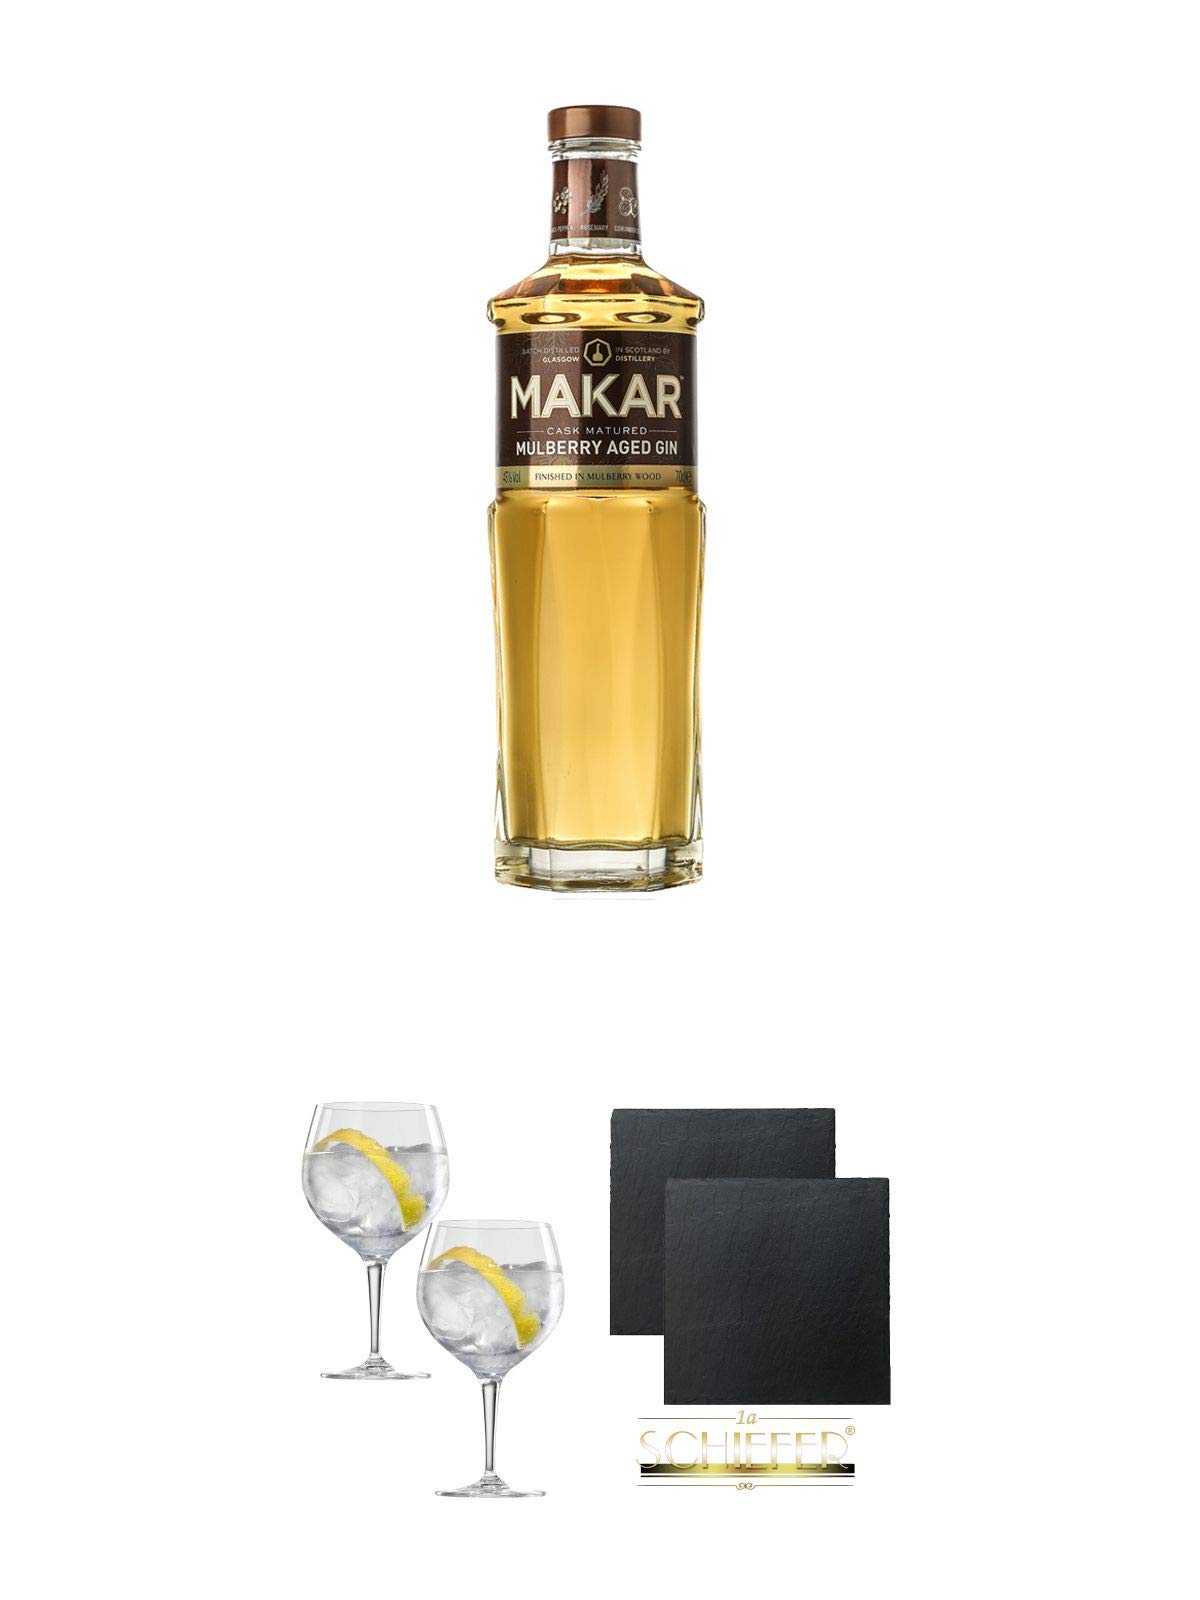 Makar Mulberry Wood Aged Gin - Glasgow Distillery 0,5 Liter + Spiegelau Gin & Tonic 4390179 2 Gläser + Schiefer Glasuntersetzer eckig ca. 9,5 cm Ø 2 Stück